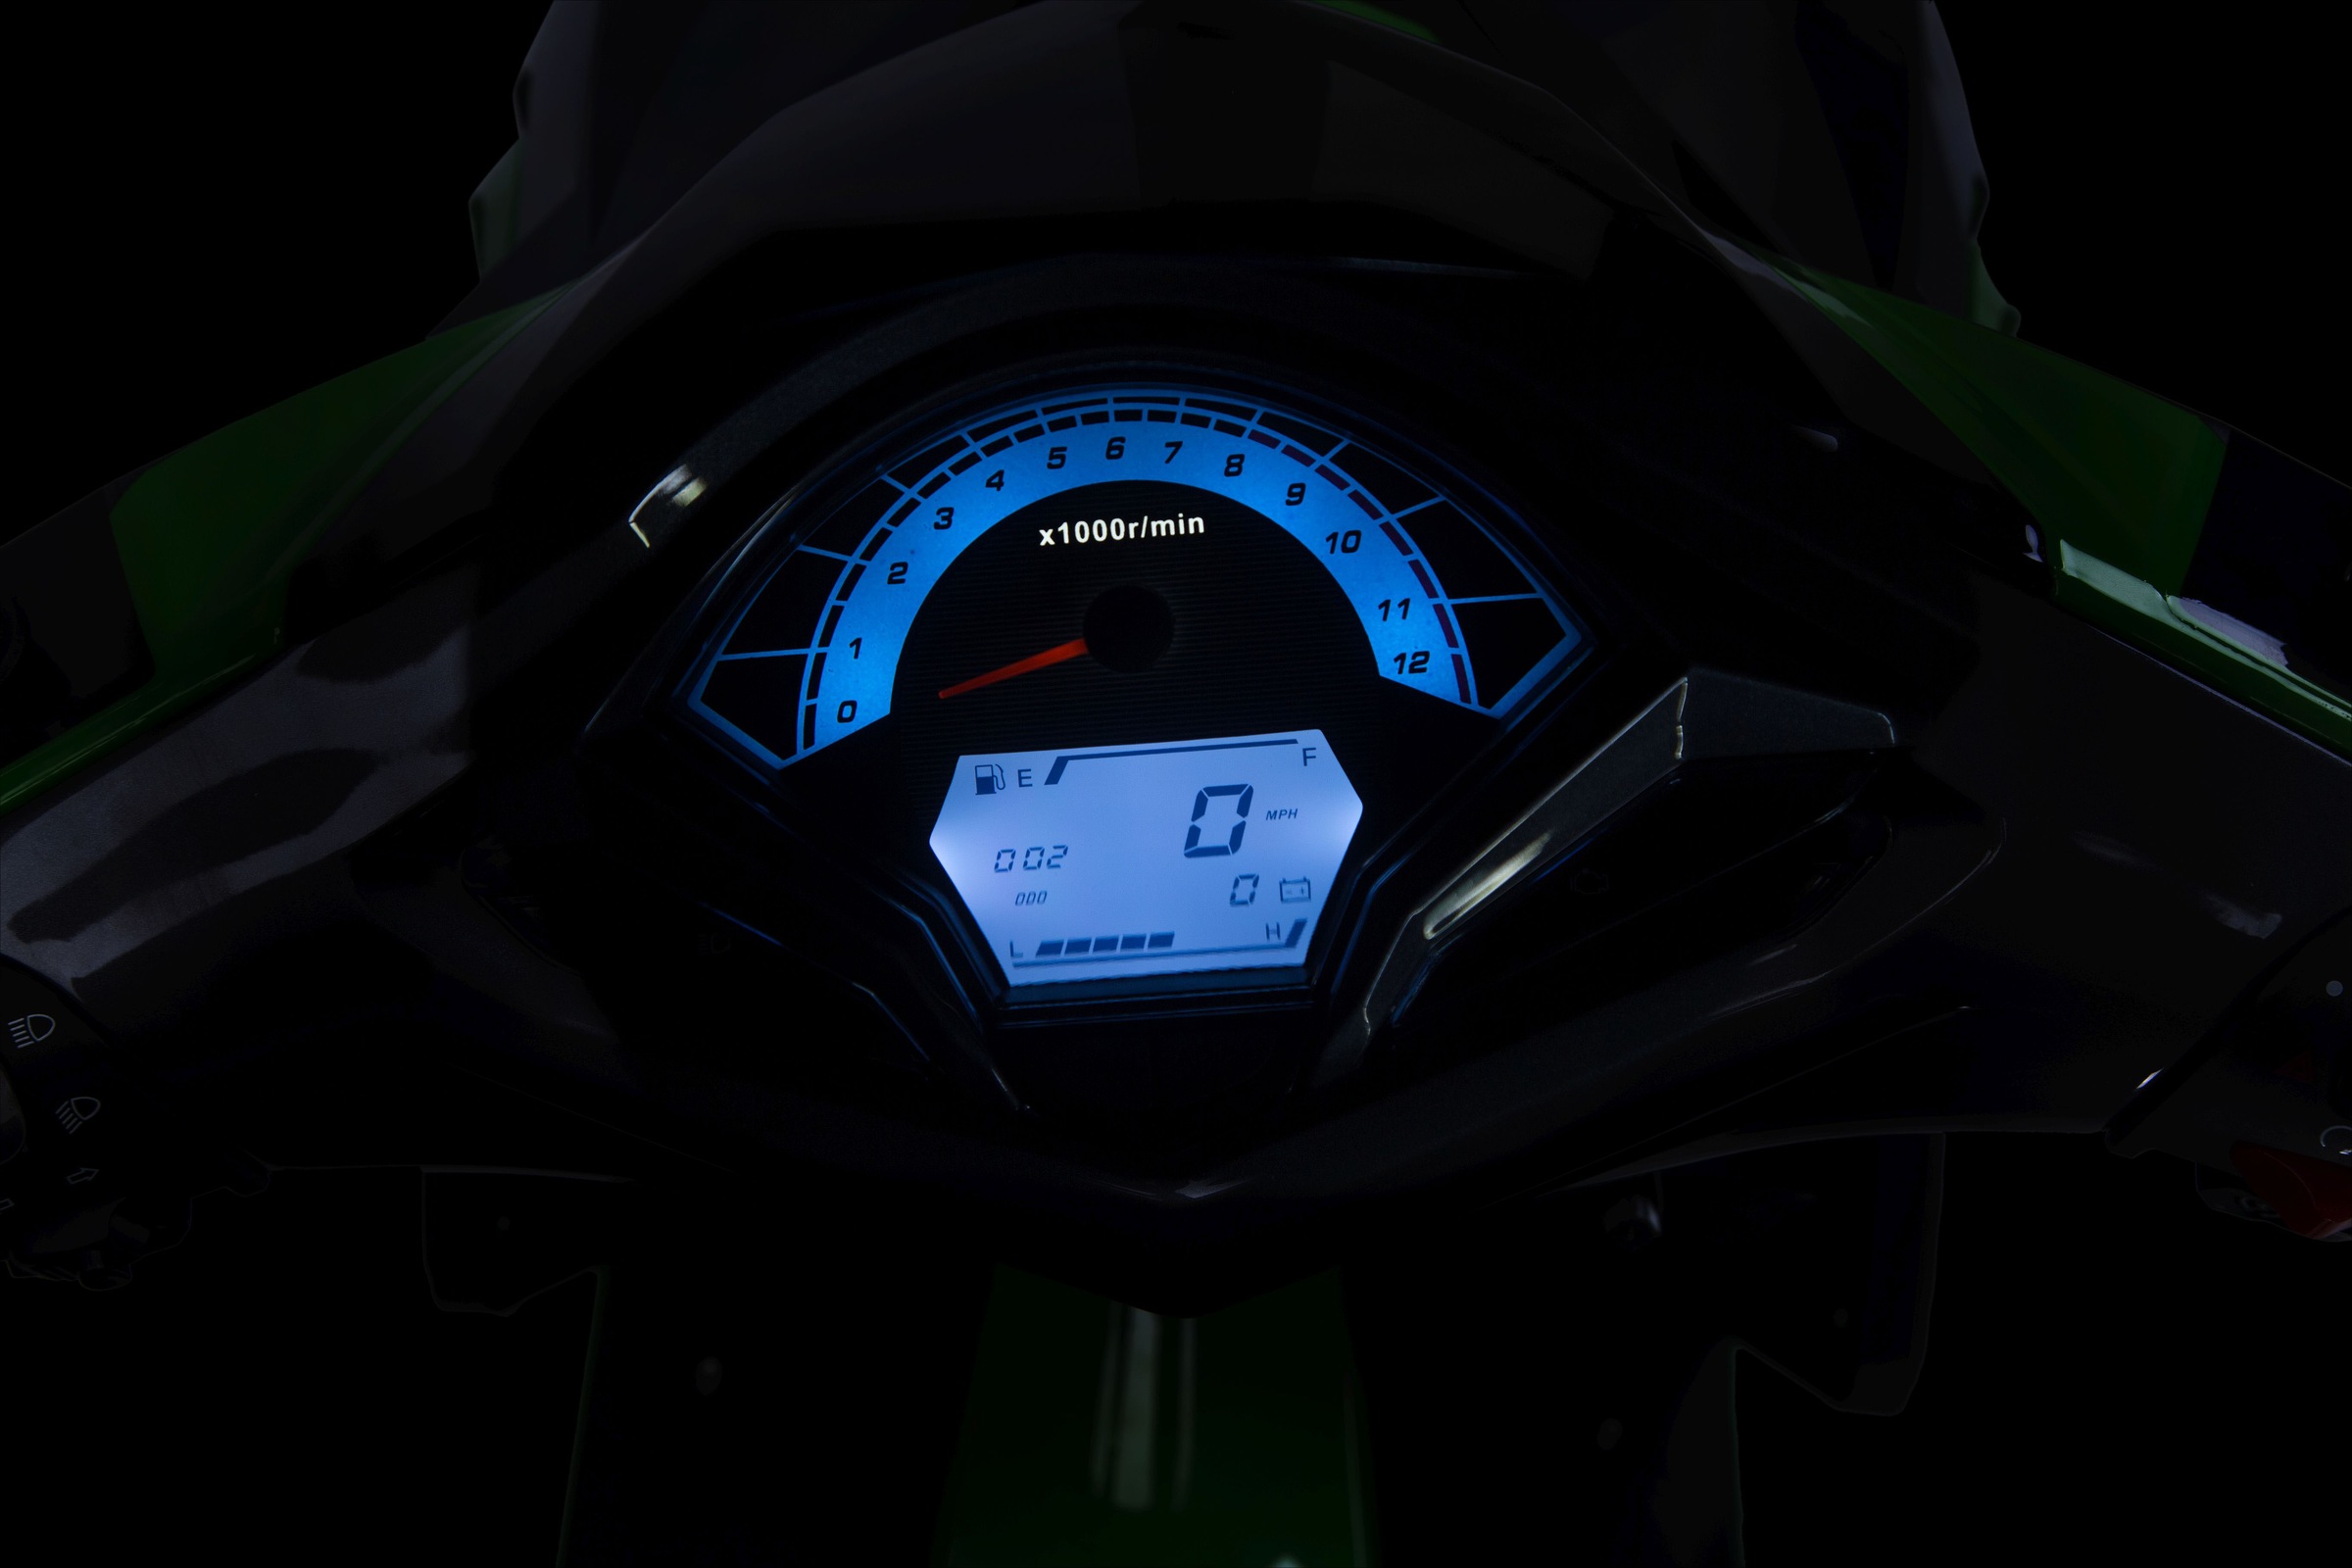 GT UNION Motorroller »Striker«, 50 cm³, 45 km/h, Euro 5, 3 PS, mit USB-Anschluss und LED-Vollausstattung, sportliches Design